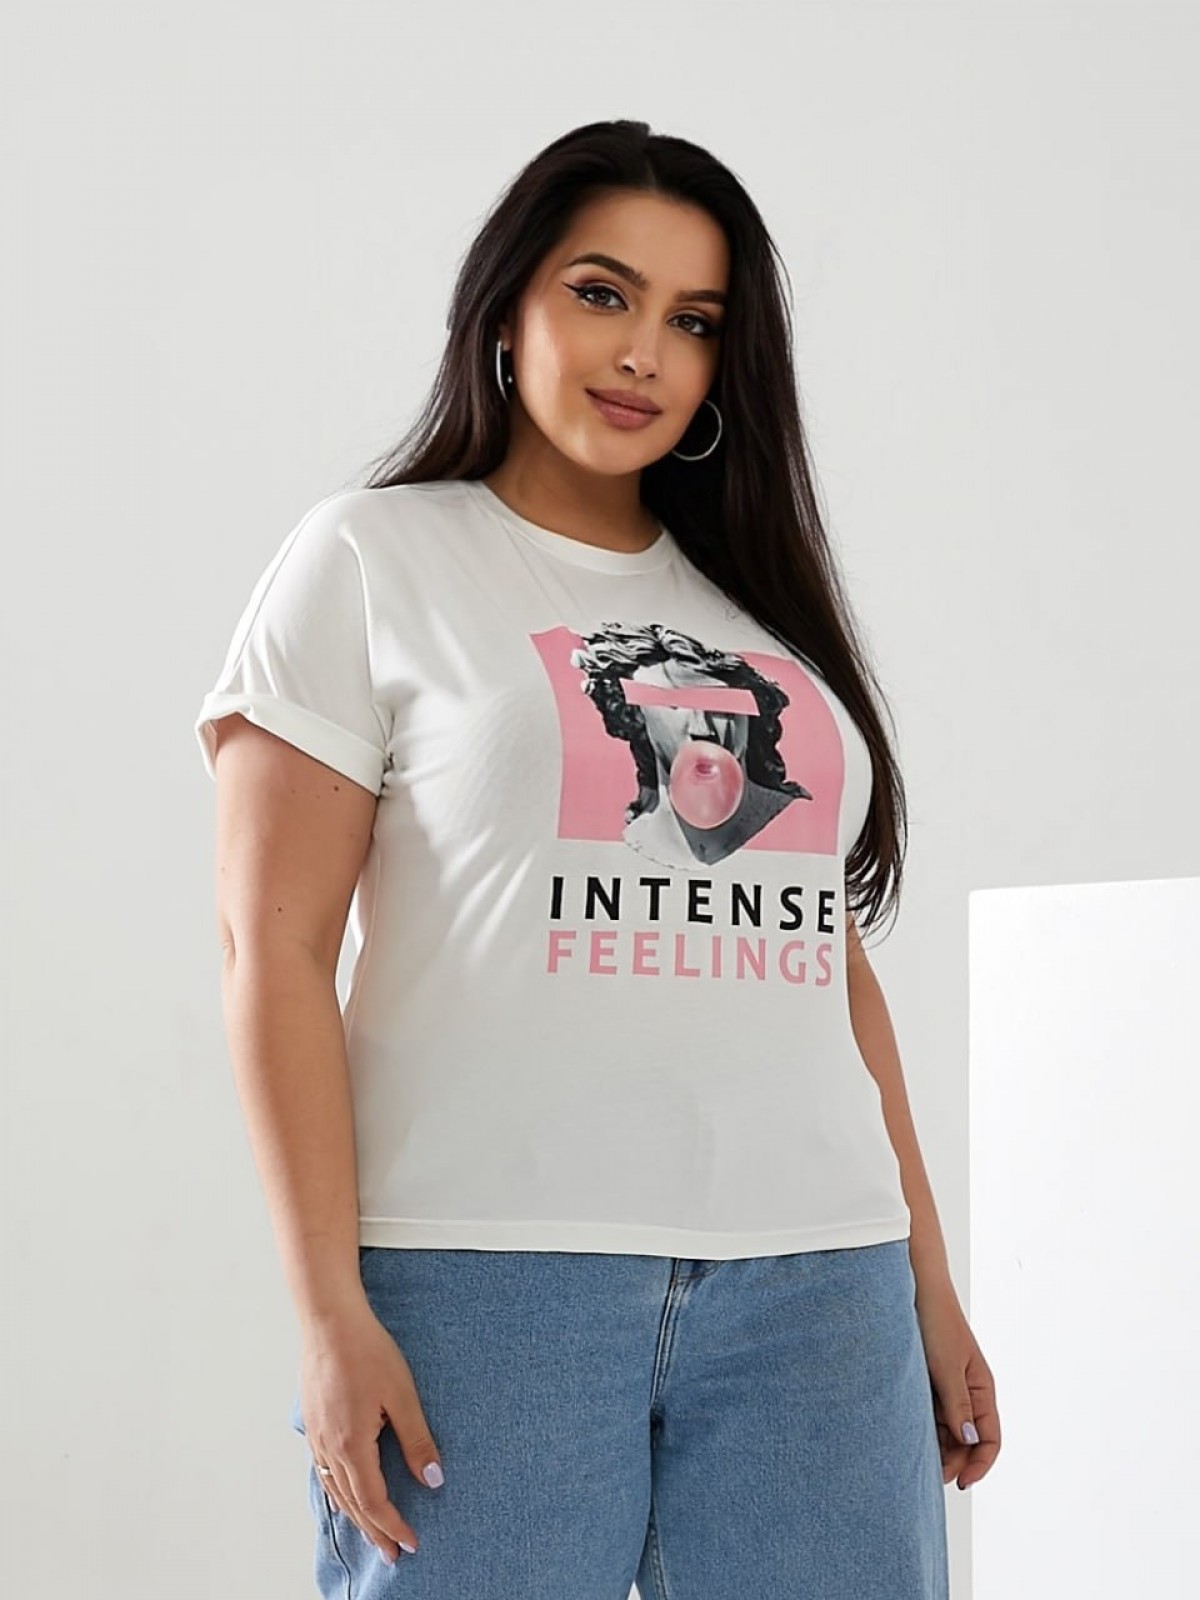 Жіноча футболка INTENSE колір молочний р.52/54 433178